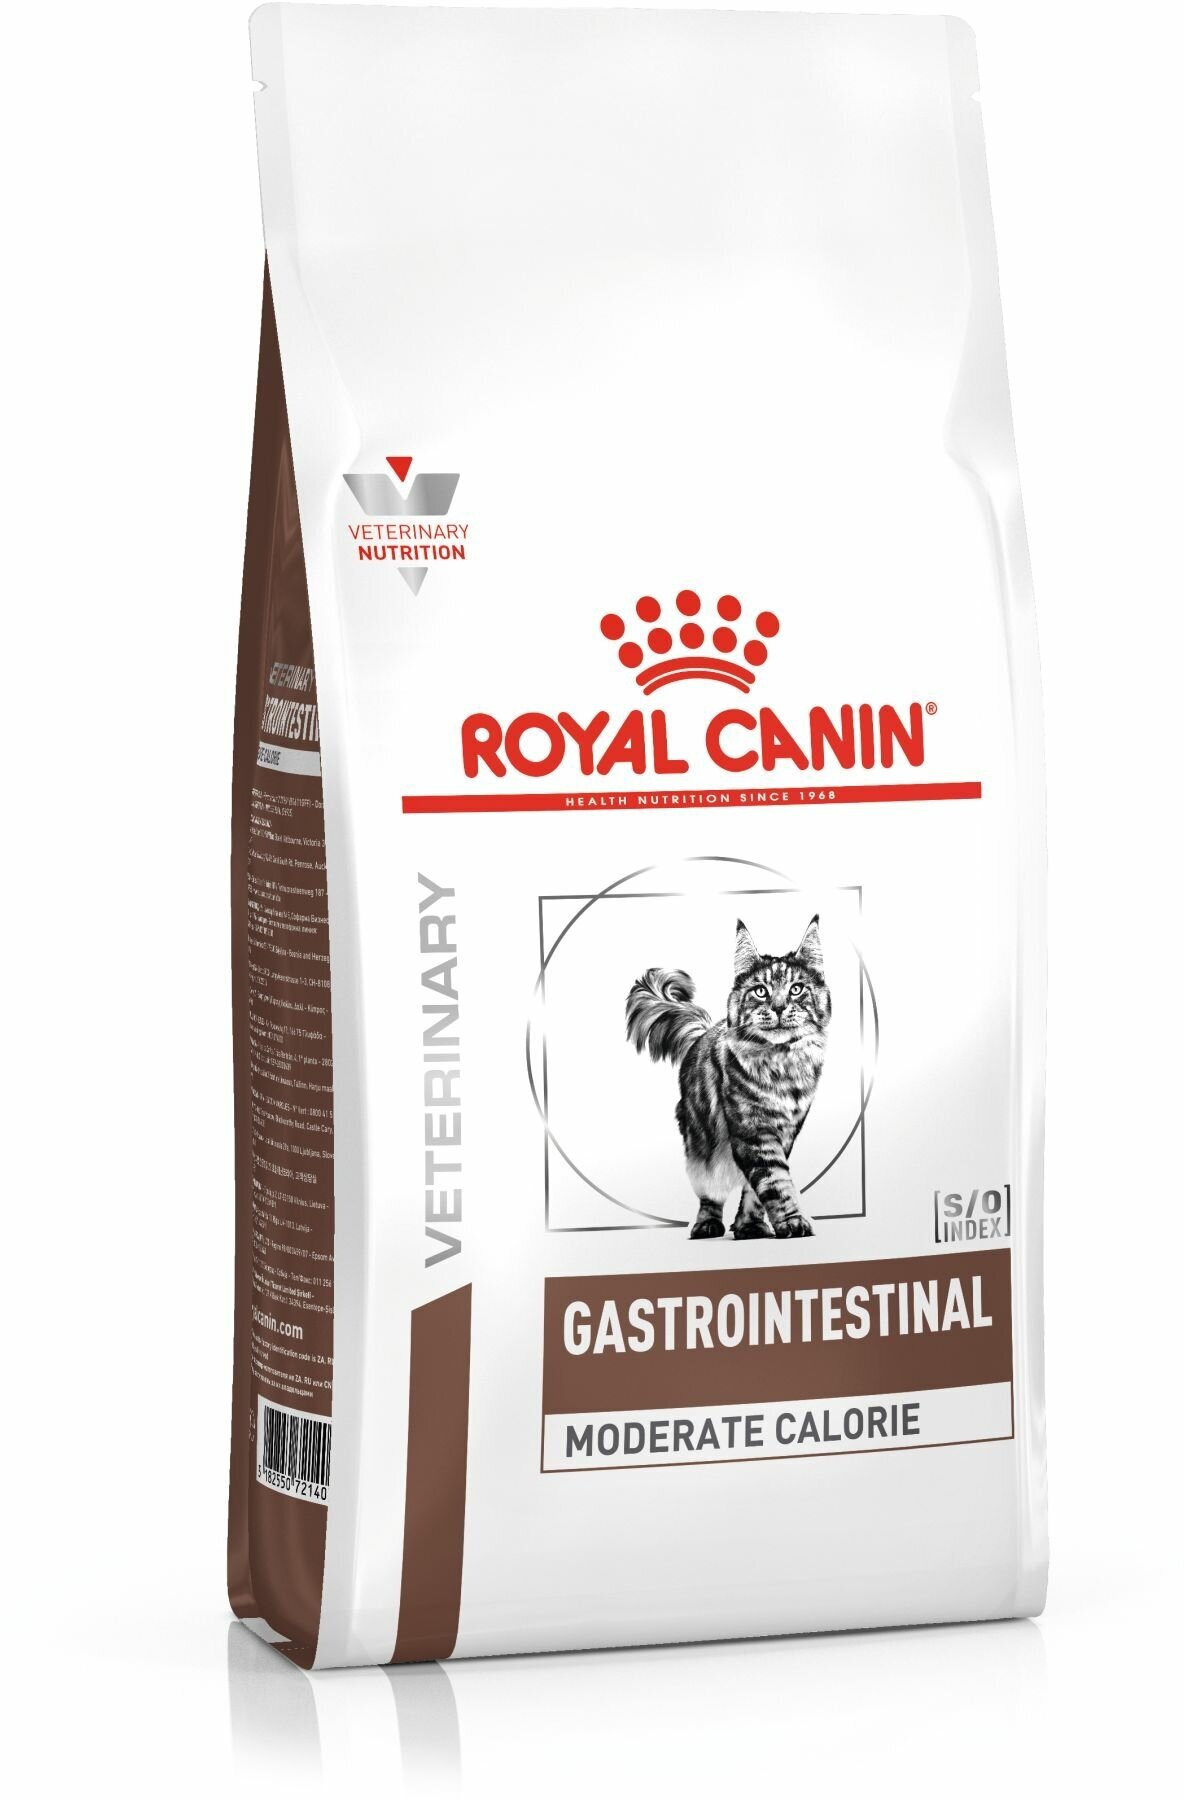 ROYAL CANIN VD GASTRO INTESTINAL MODERATE CALORIE GIM35 400 г ветеринарная диета для кошек с пониженным содержанием жира, при воспалении кишечника, нарушении перевариваемости 2шт